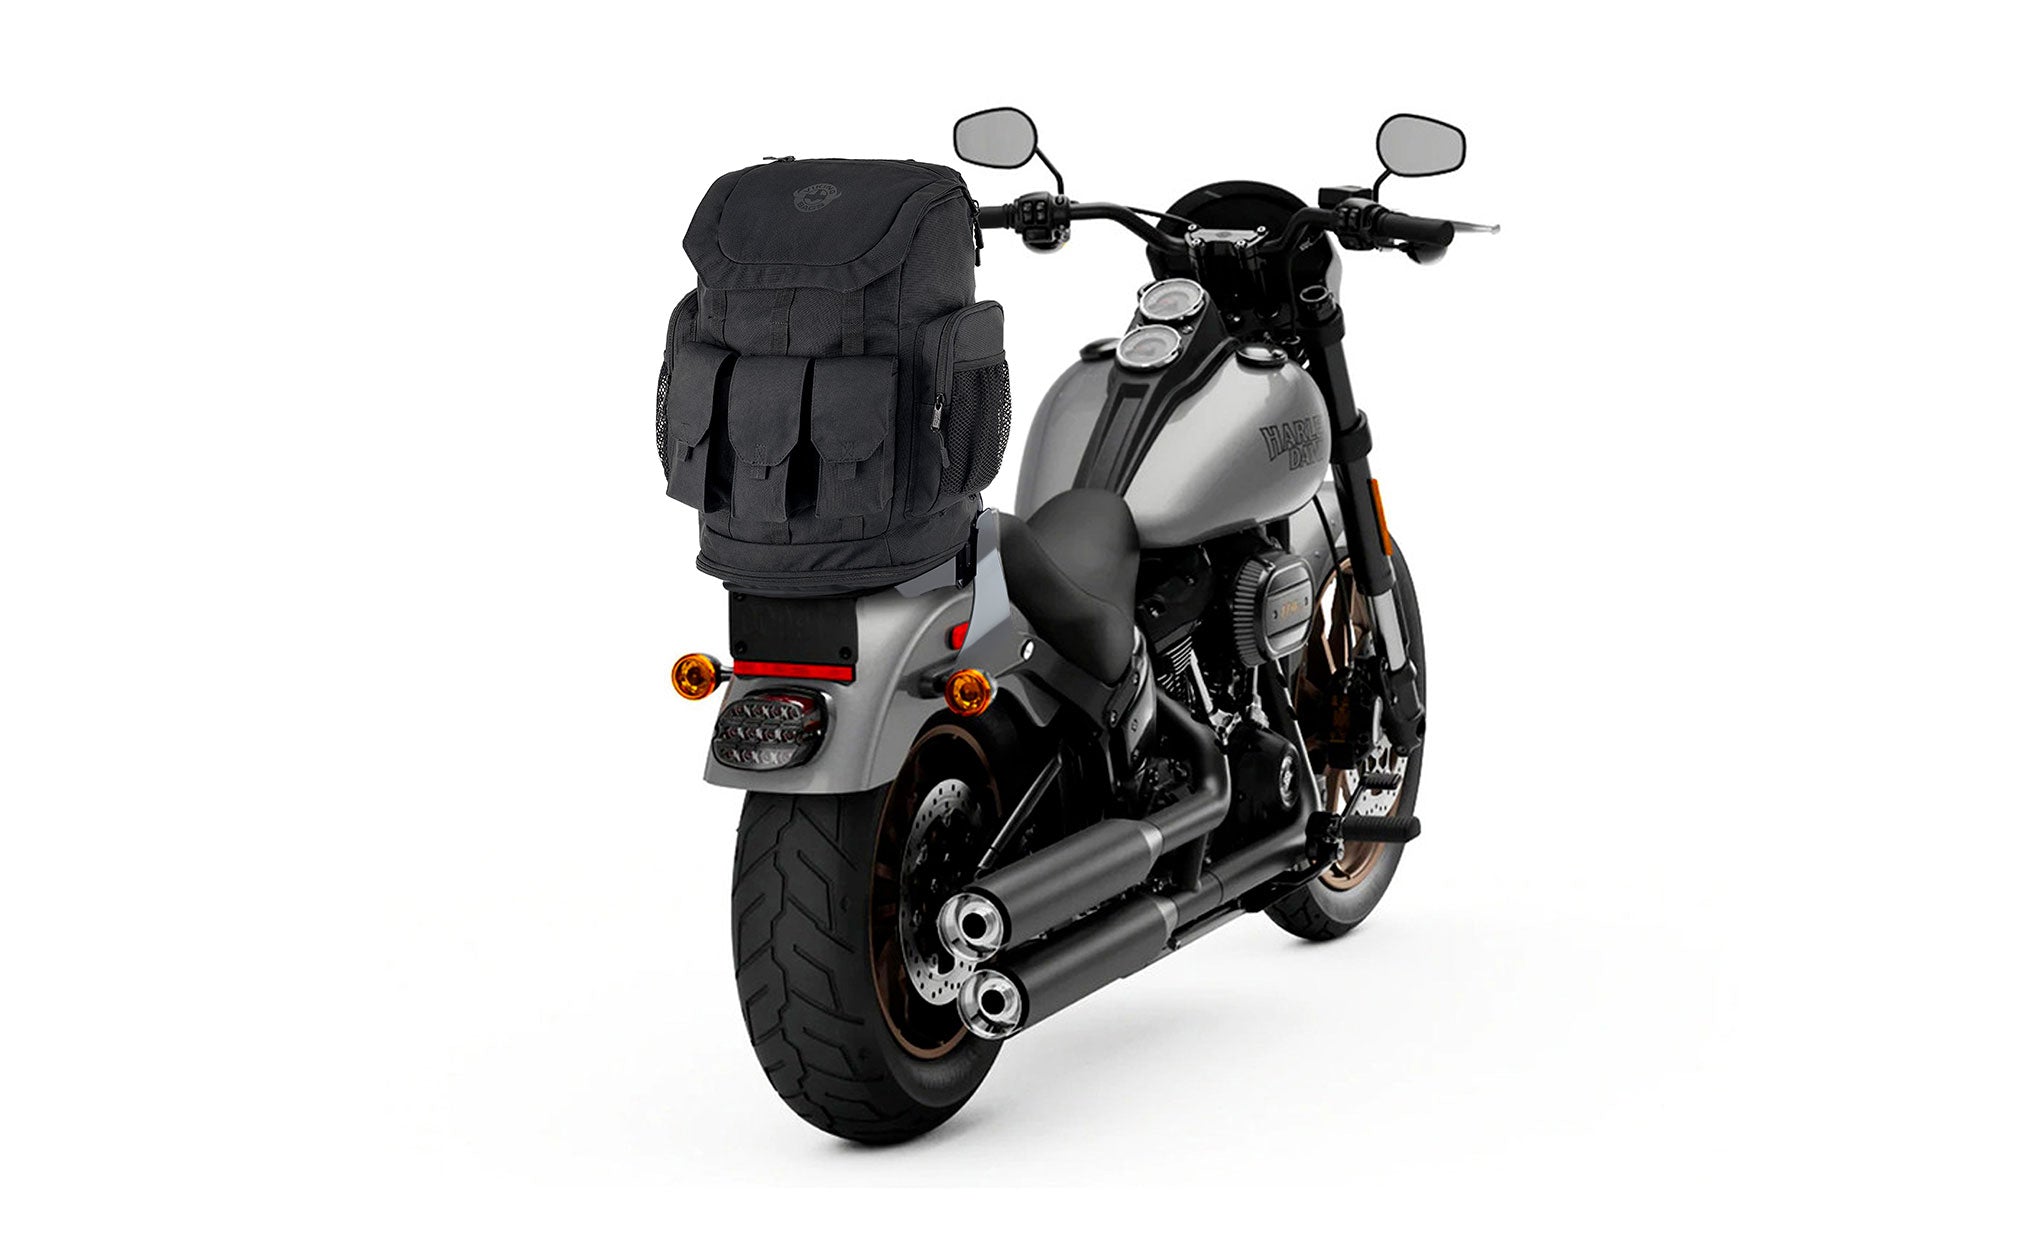 Viking Trident XL Kawasaki Motorcycle Tail Bag Bag on Bike View @expand